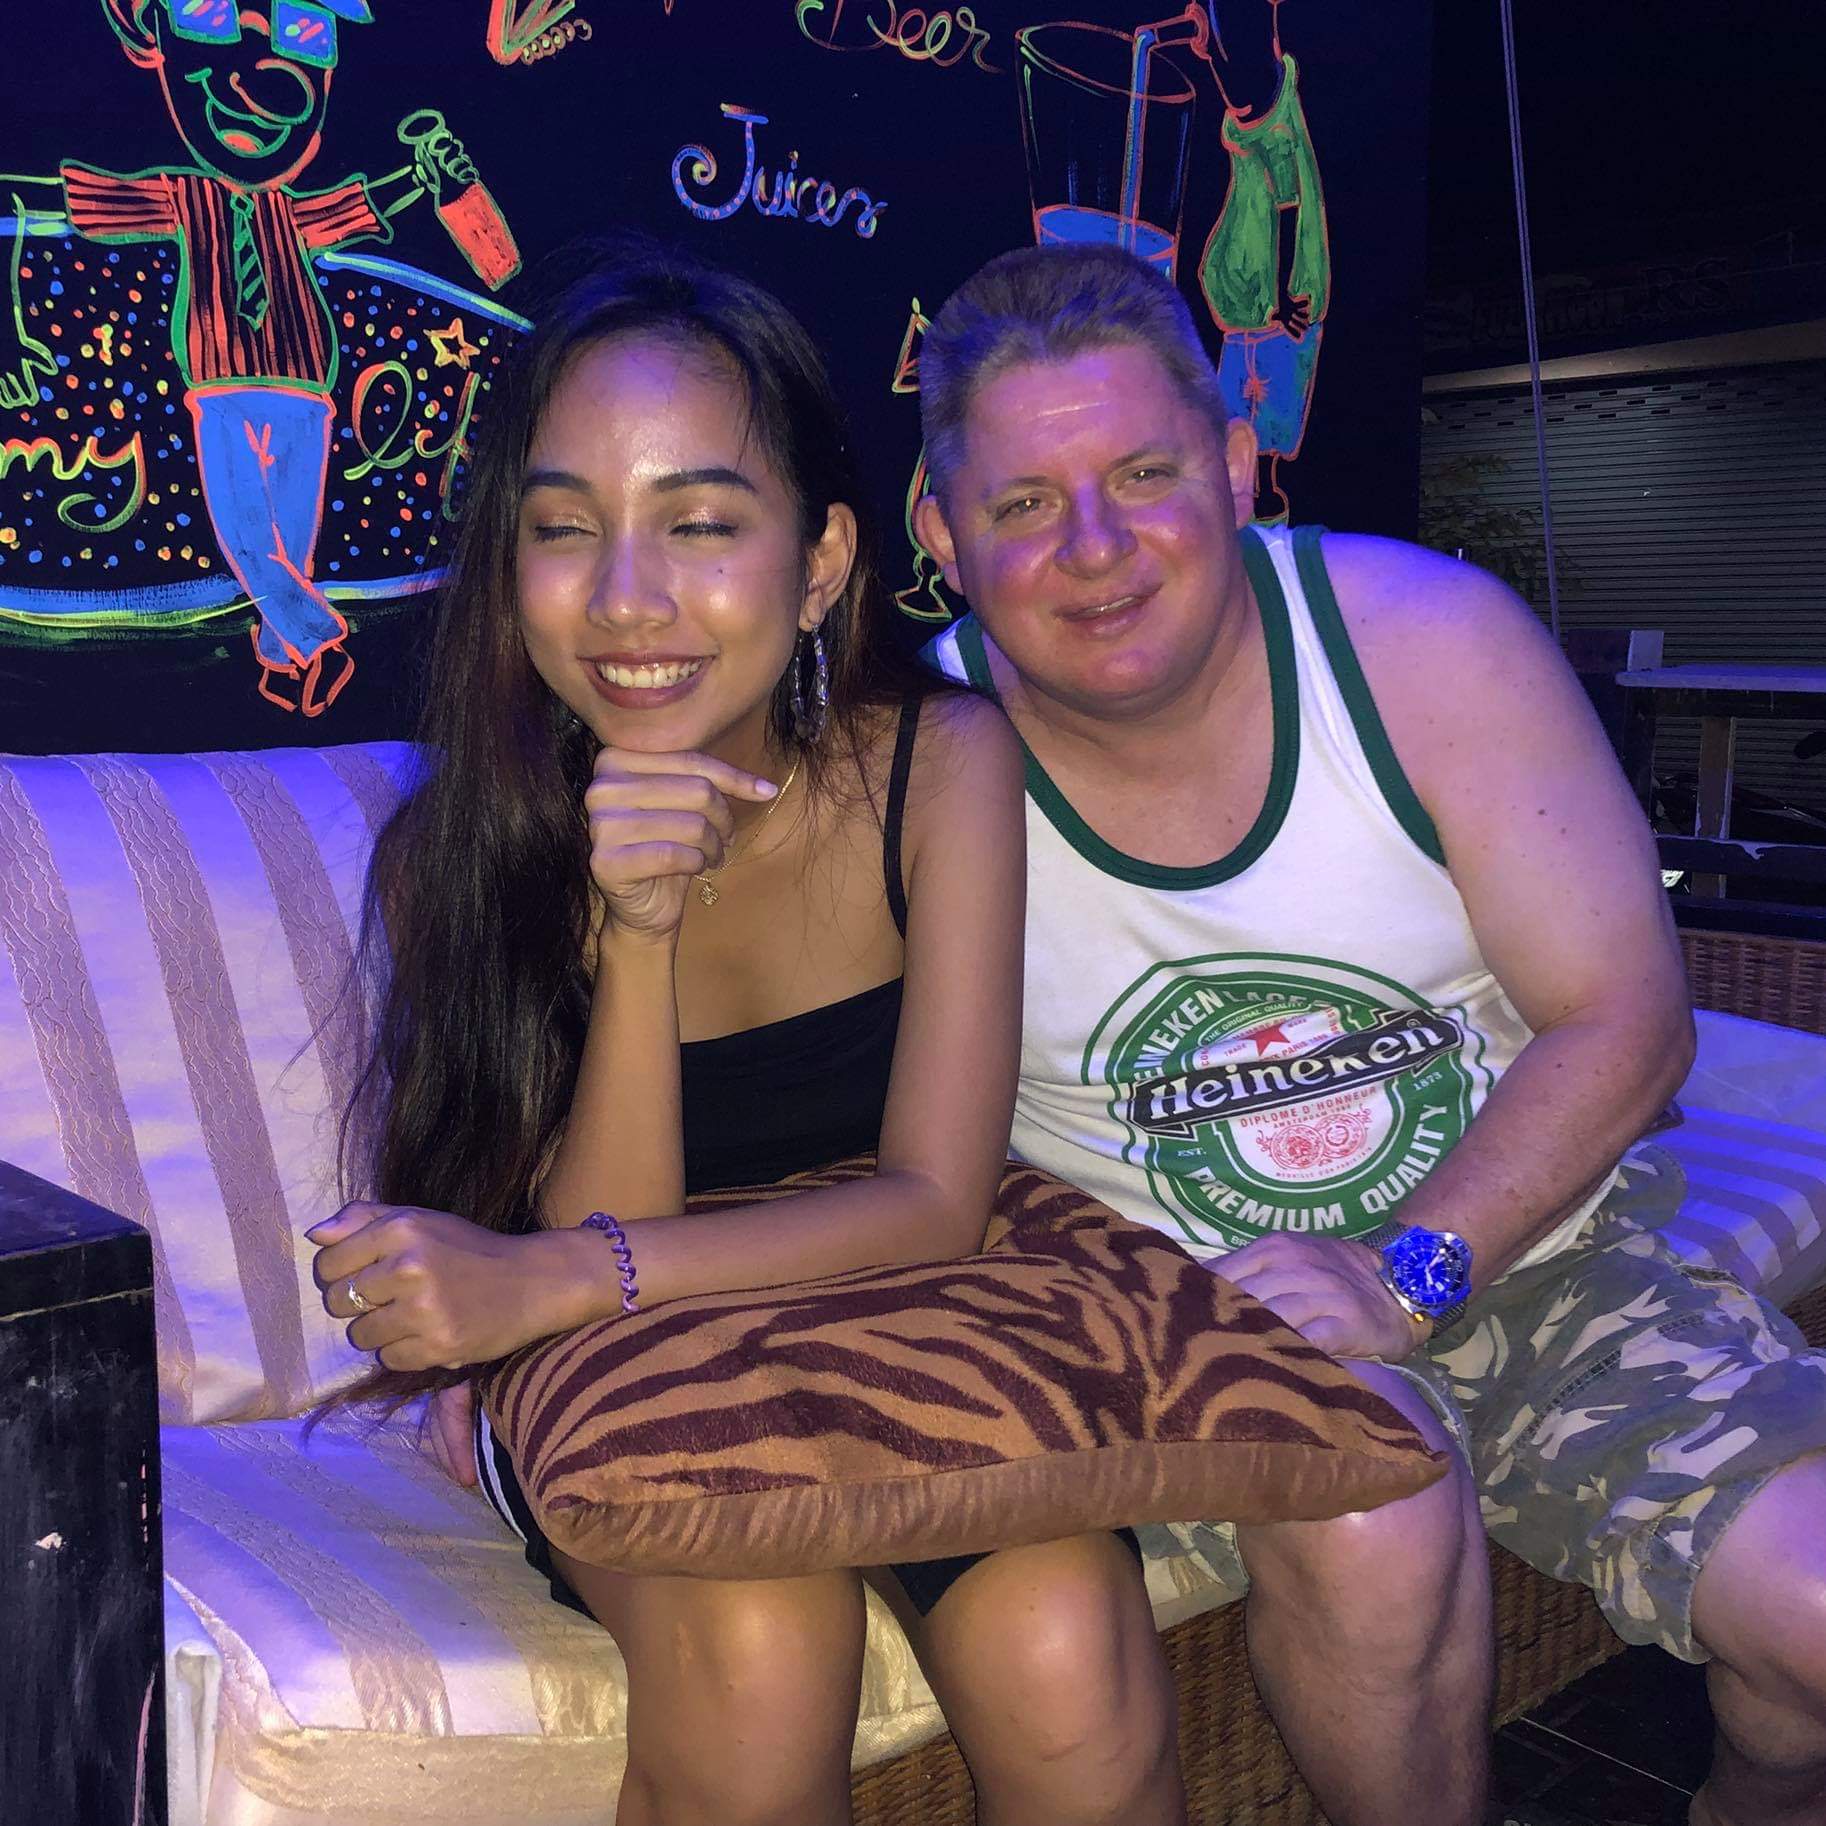 Kent with Thai bar girl